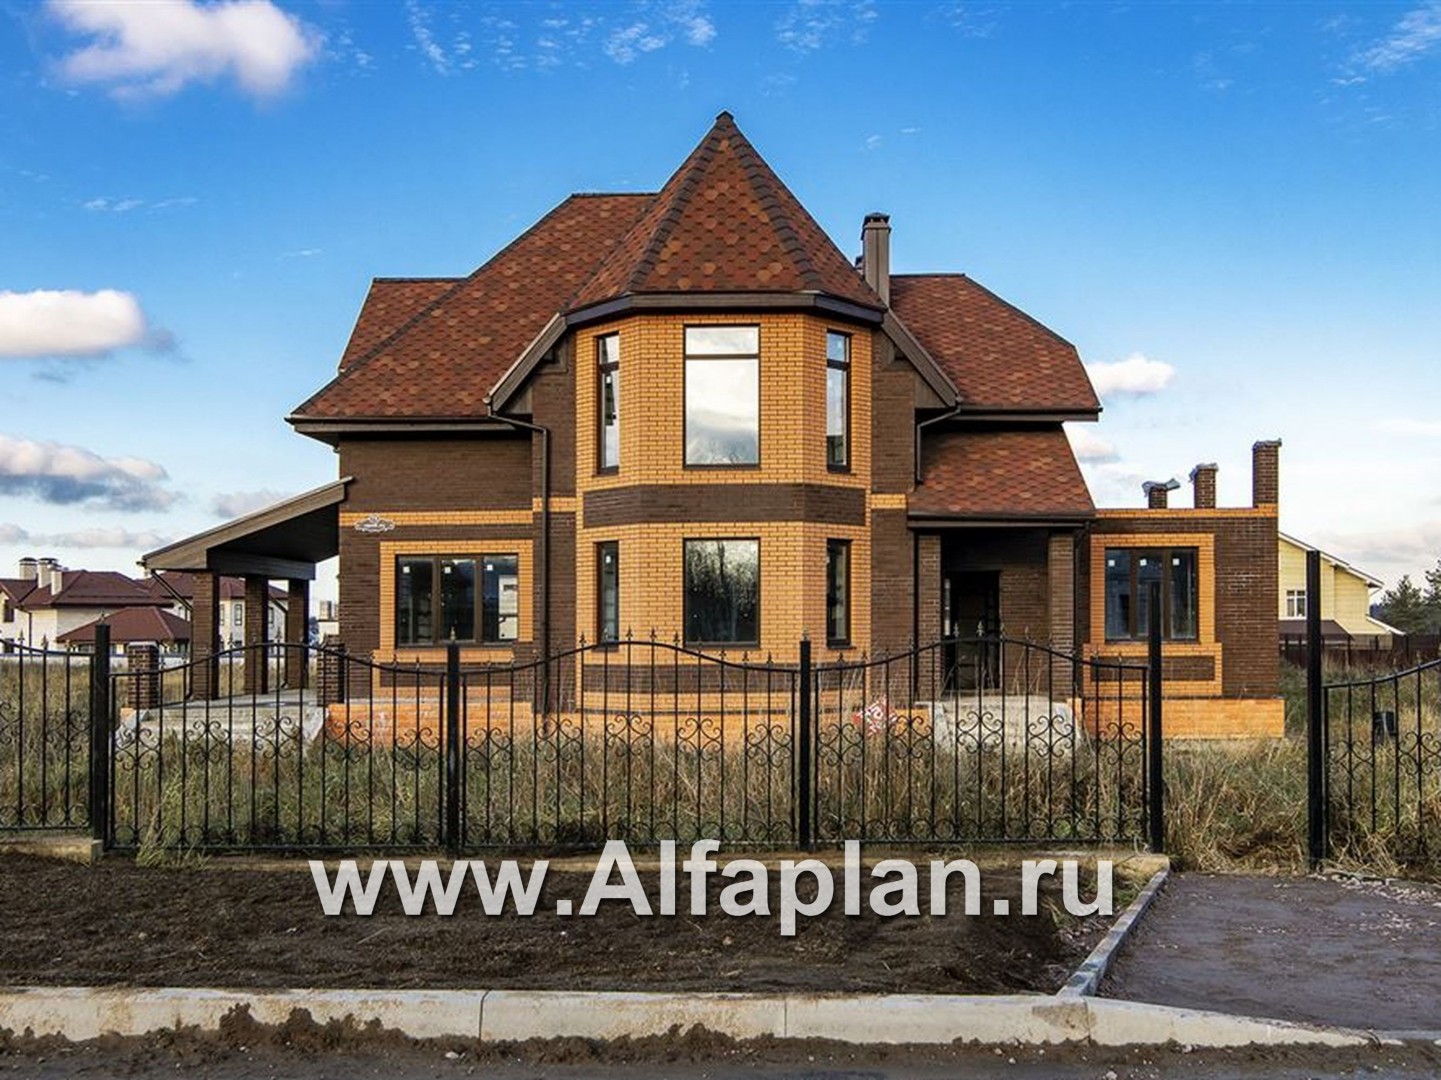 Проекты домов Альфаплан - «Шереметьев» - проект дома с большой открытой террасой - дополнительное изображение №1